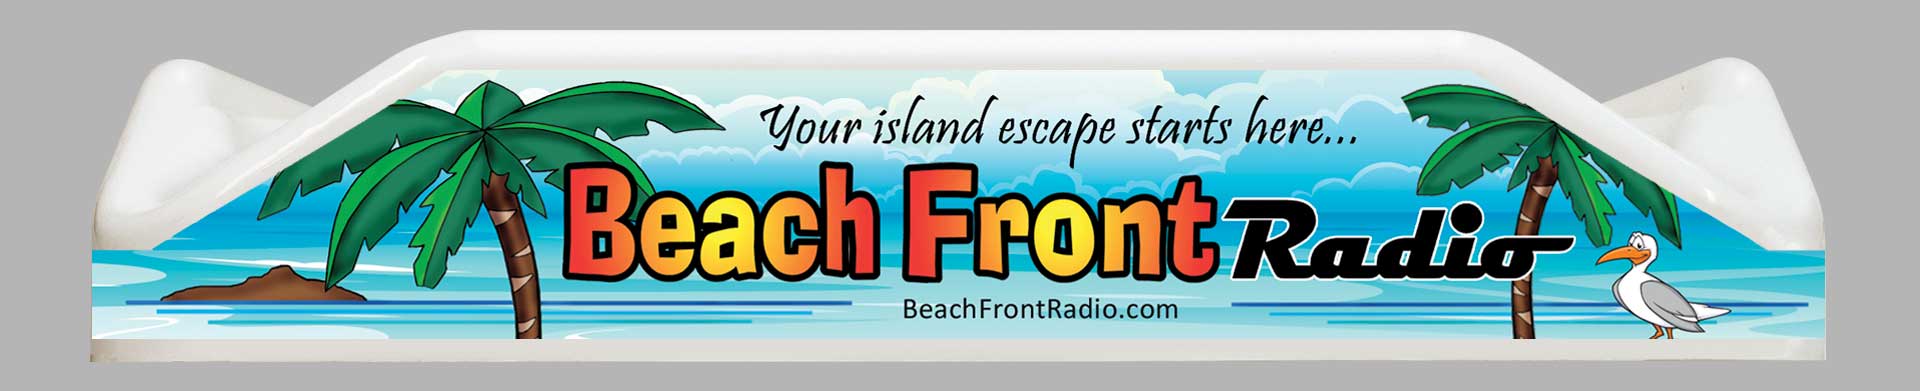 Beachfront Radio